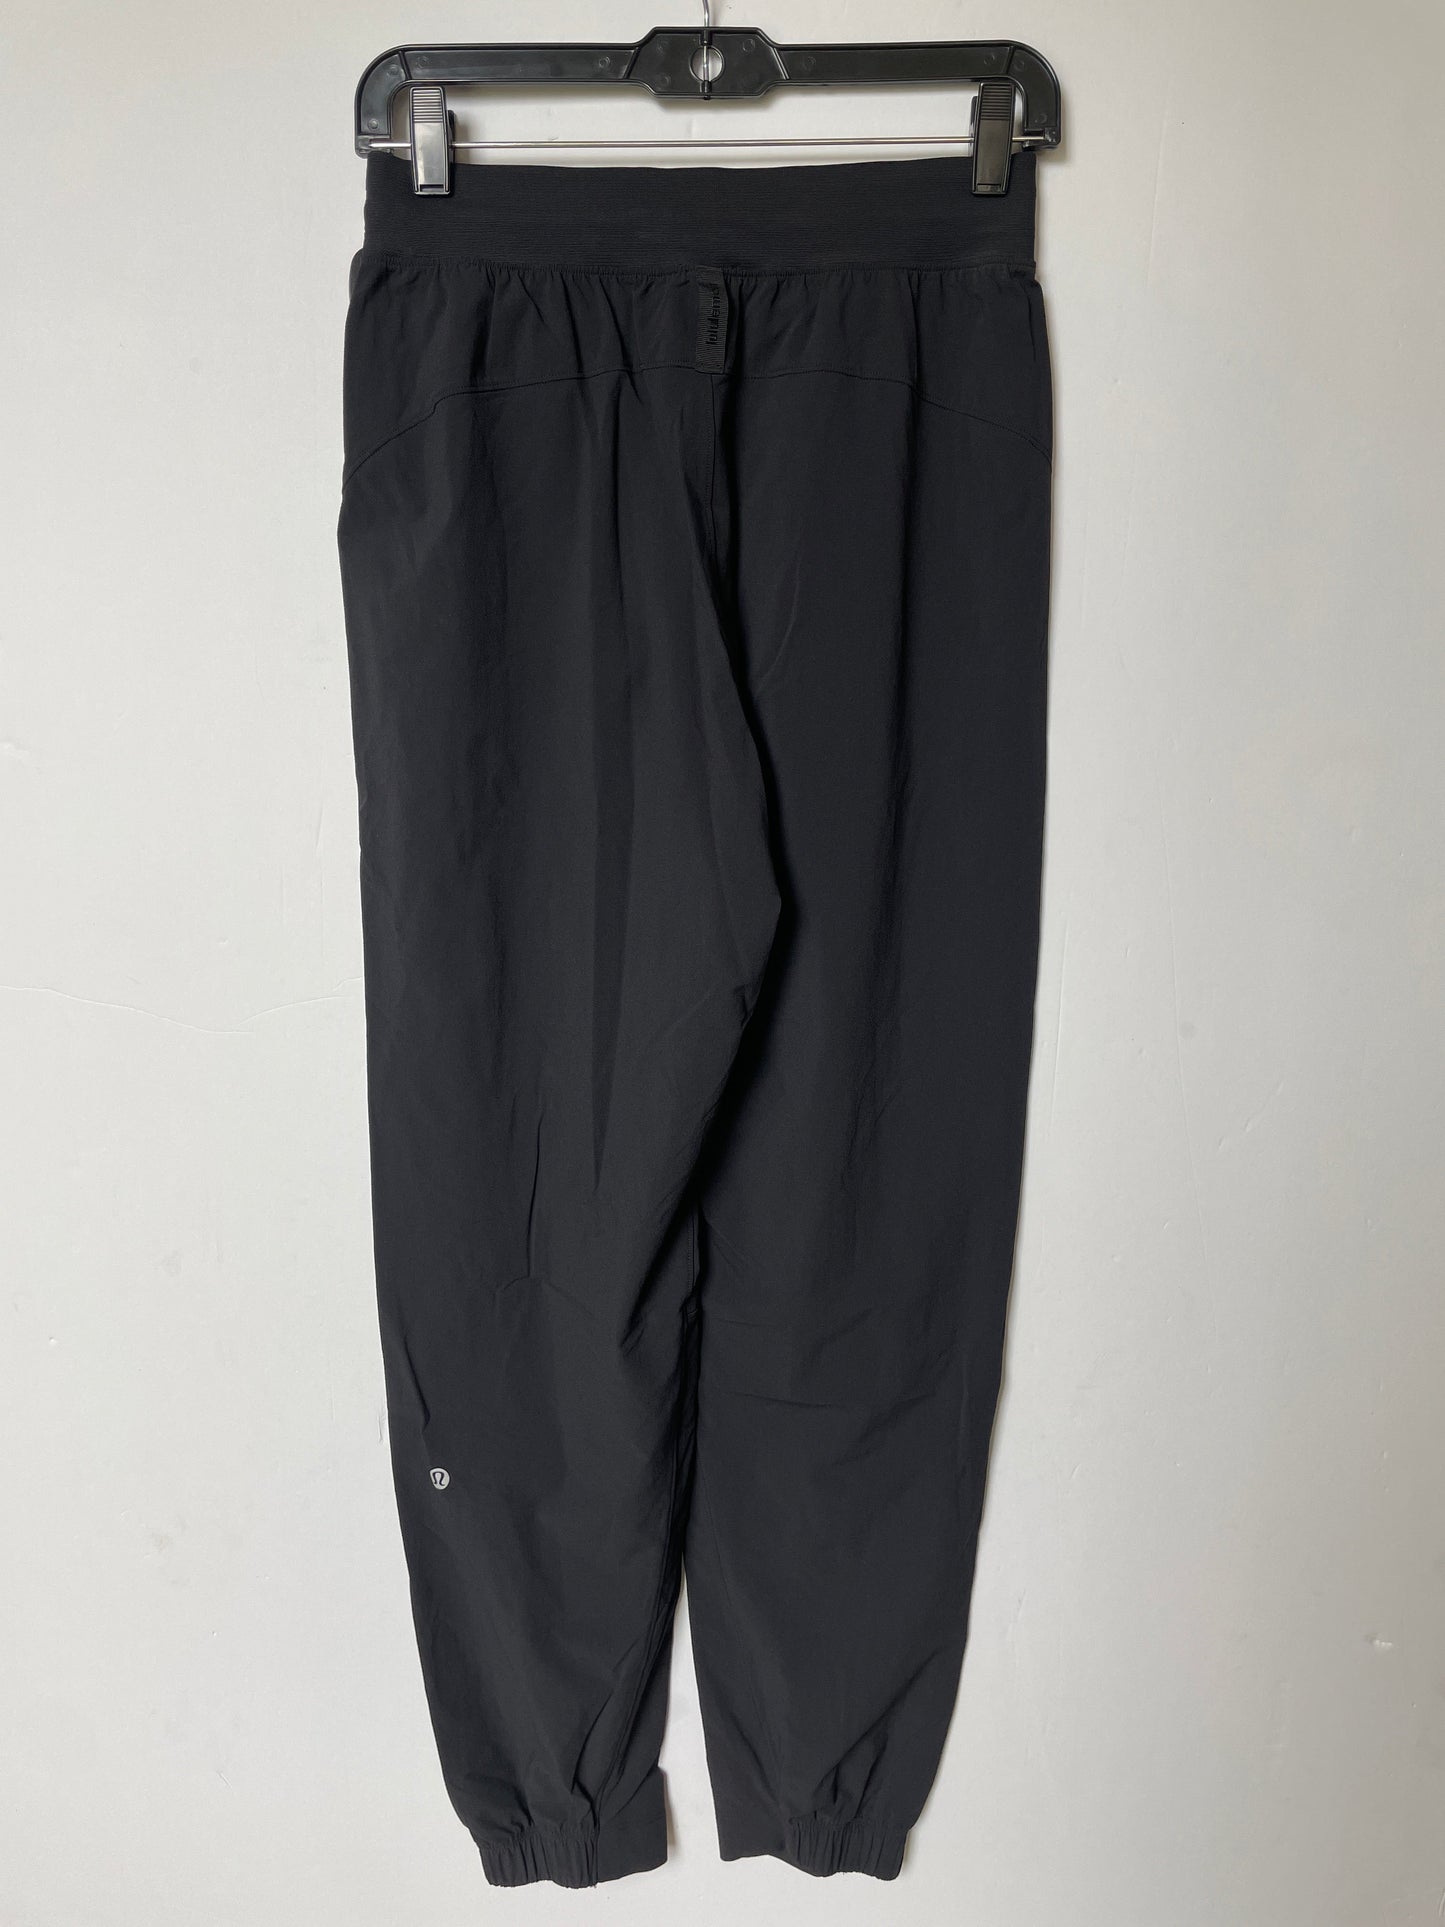 Black Athletic Pants Lululemon, Size 4